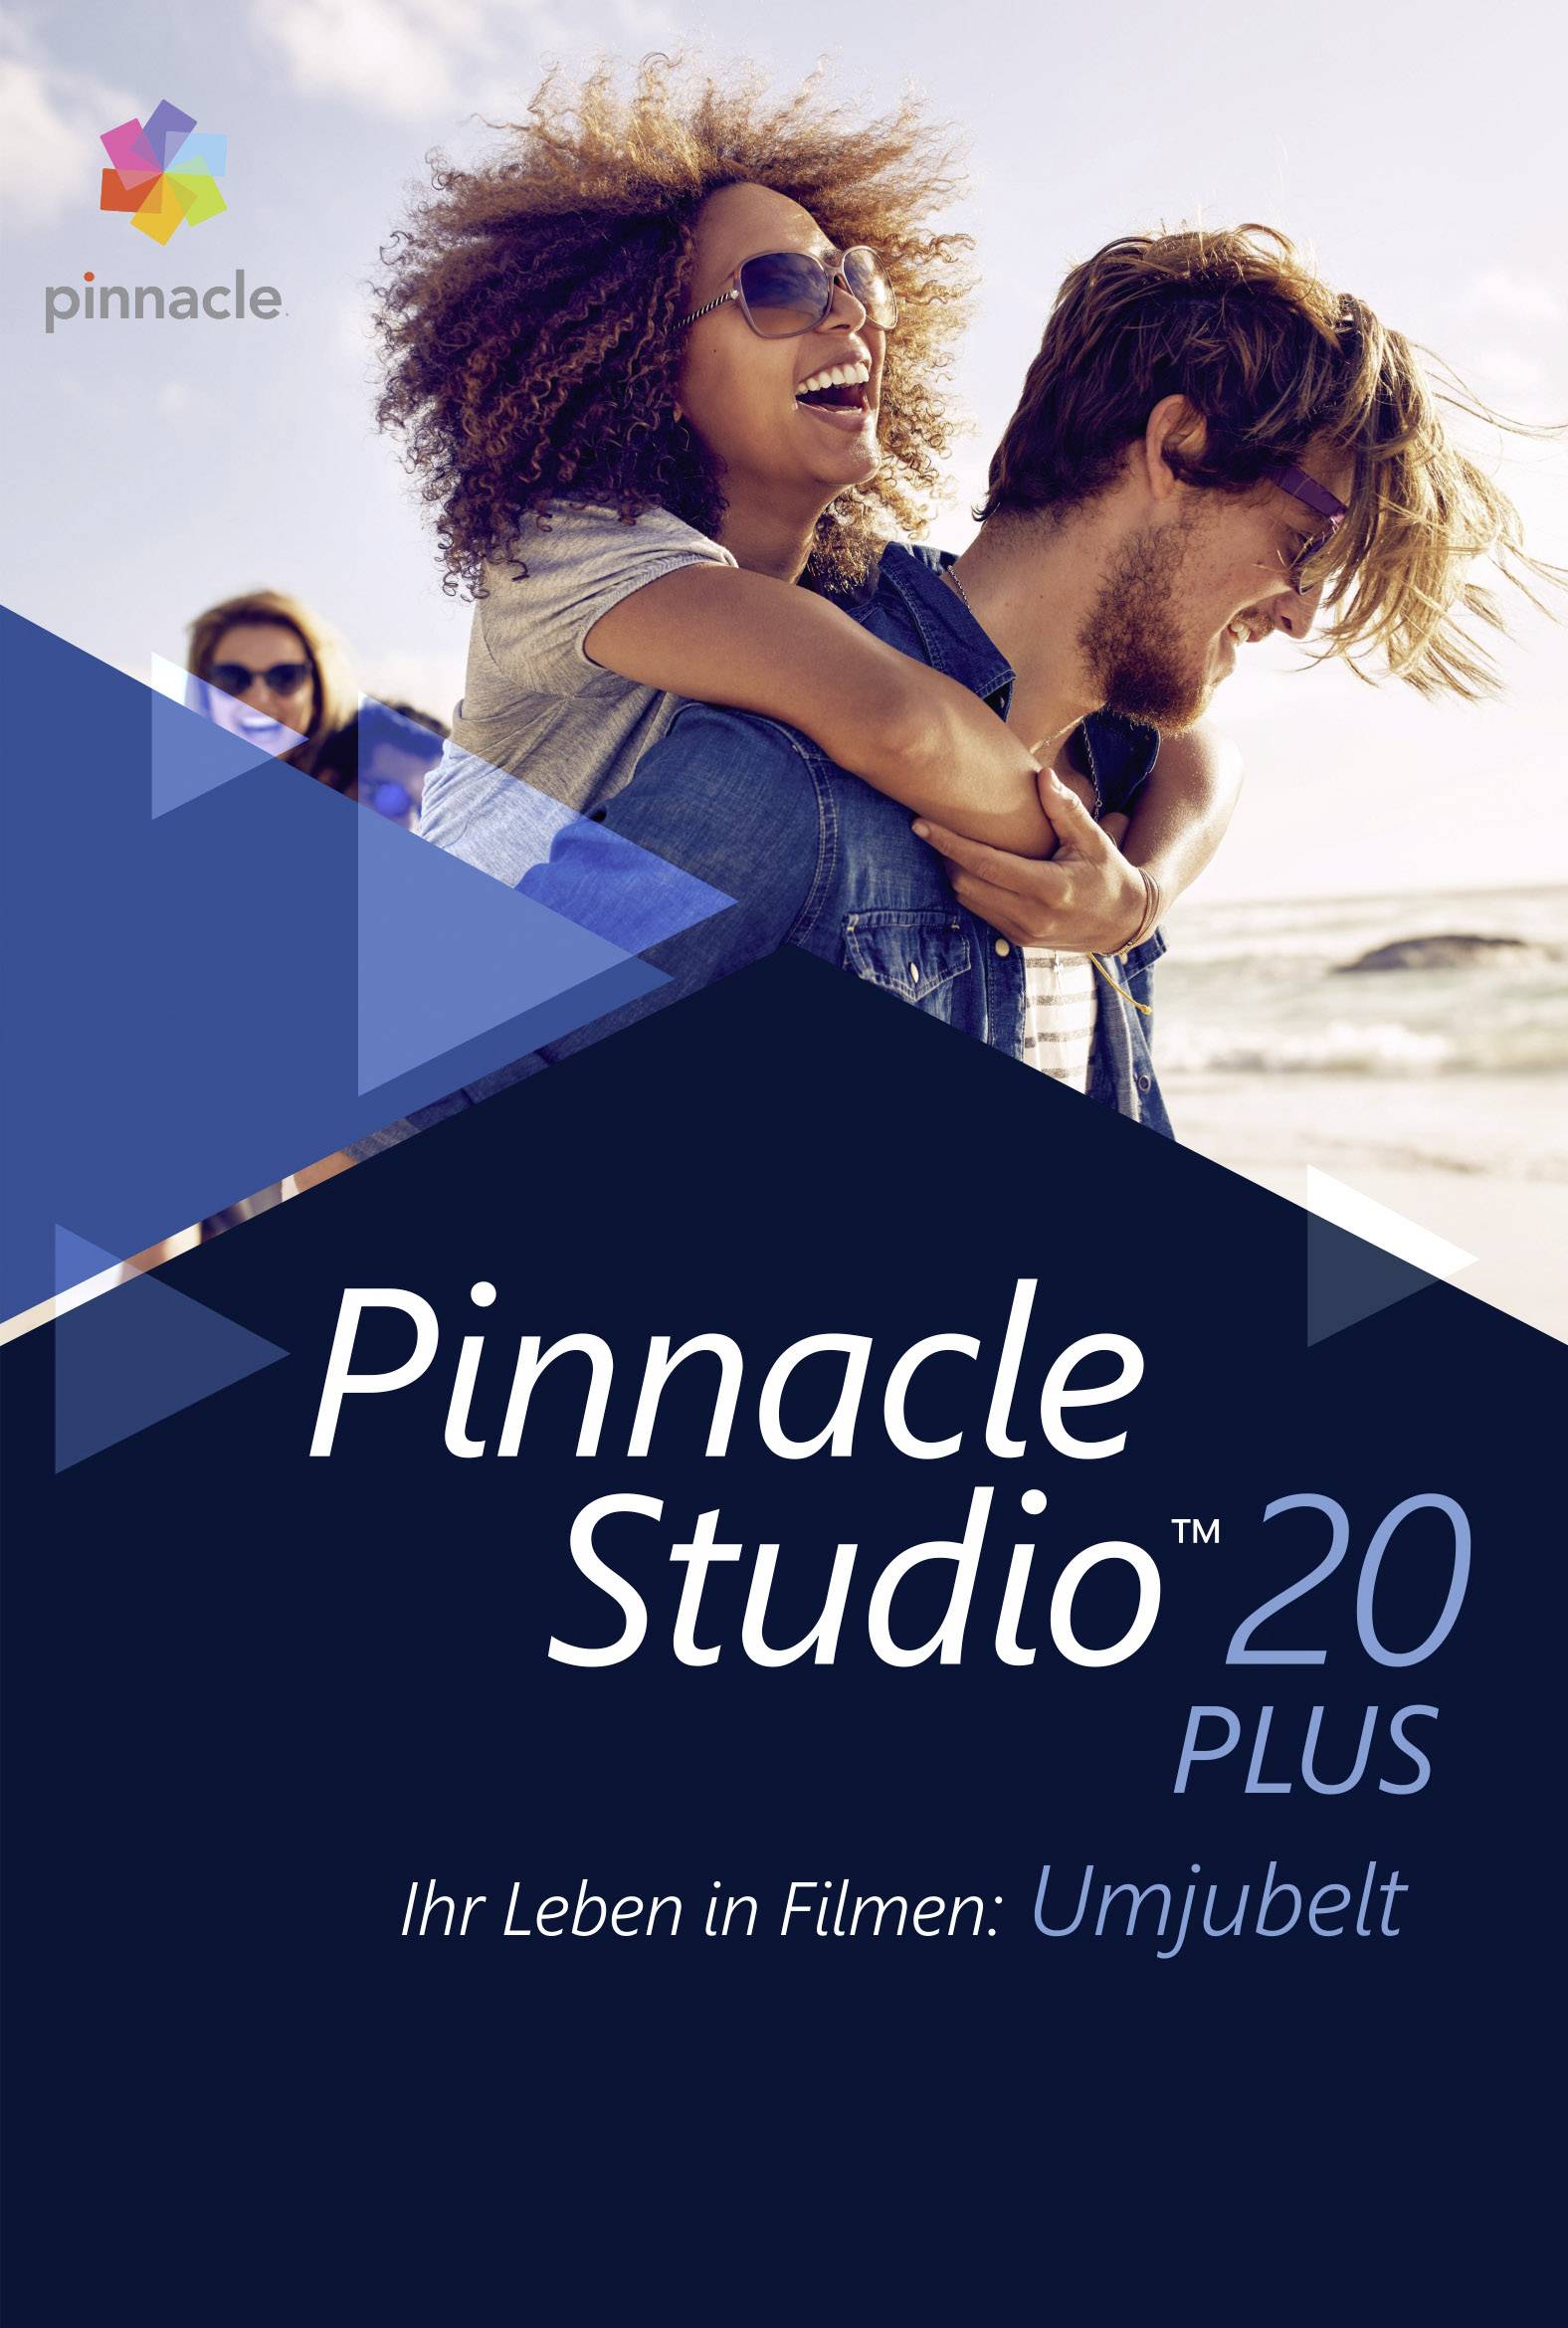 how to merge videos in pinnacle studio 20 ultimate